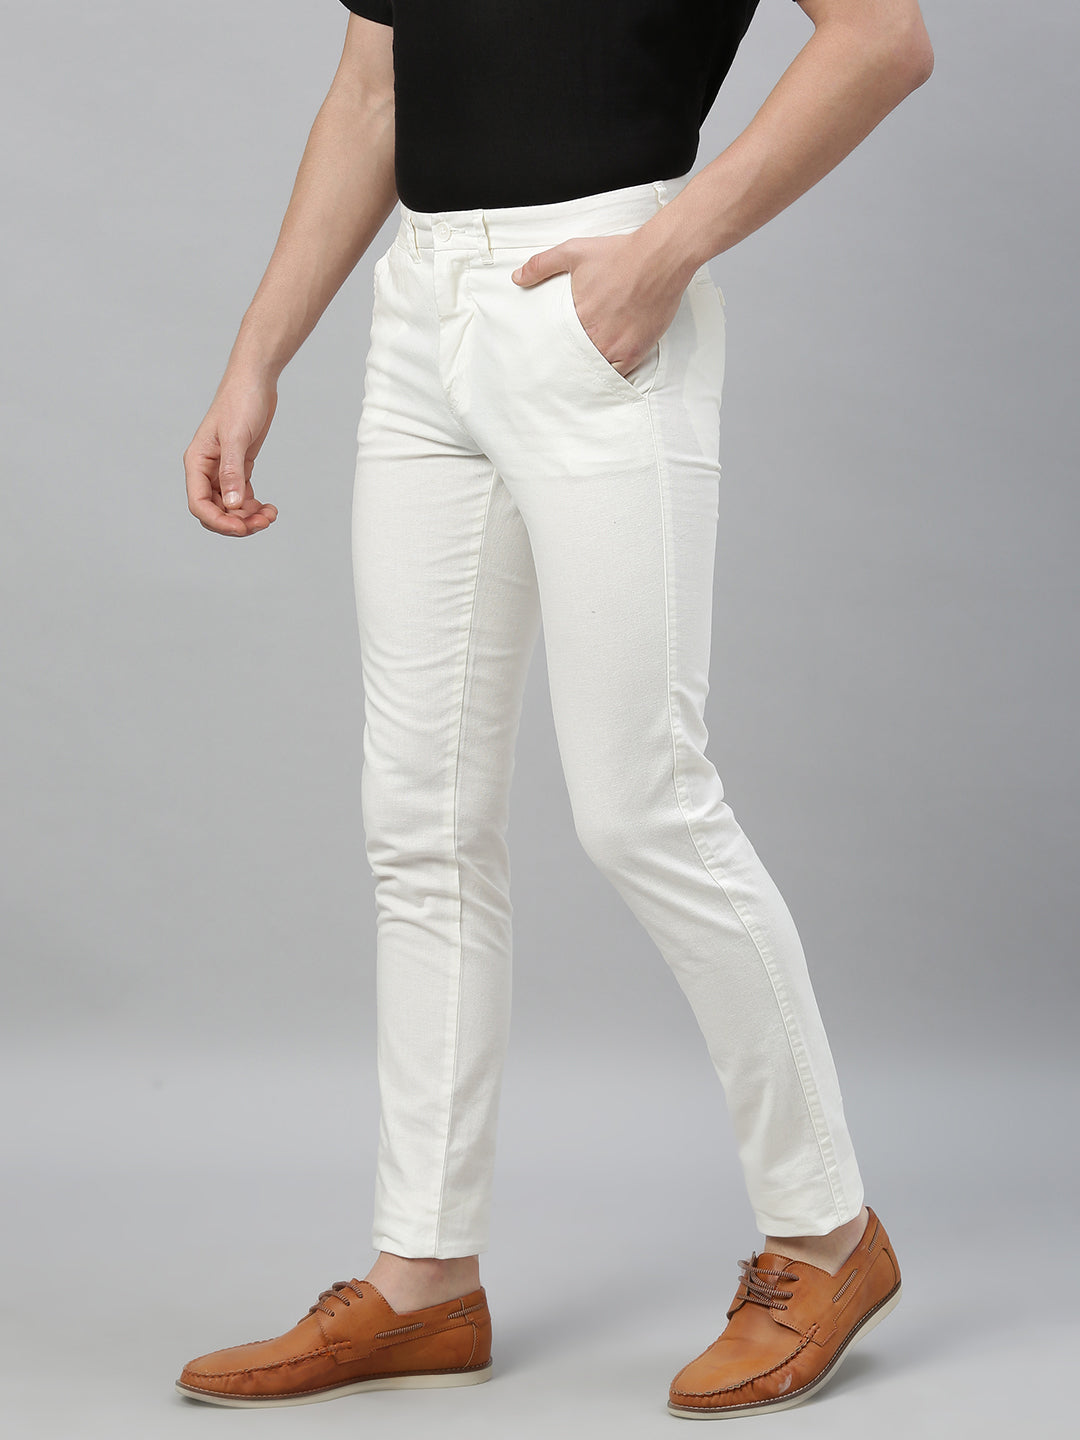 Buy Men's Cotton Linen Casual Wear Slim Fit Pants